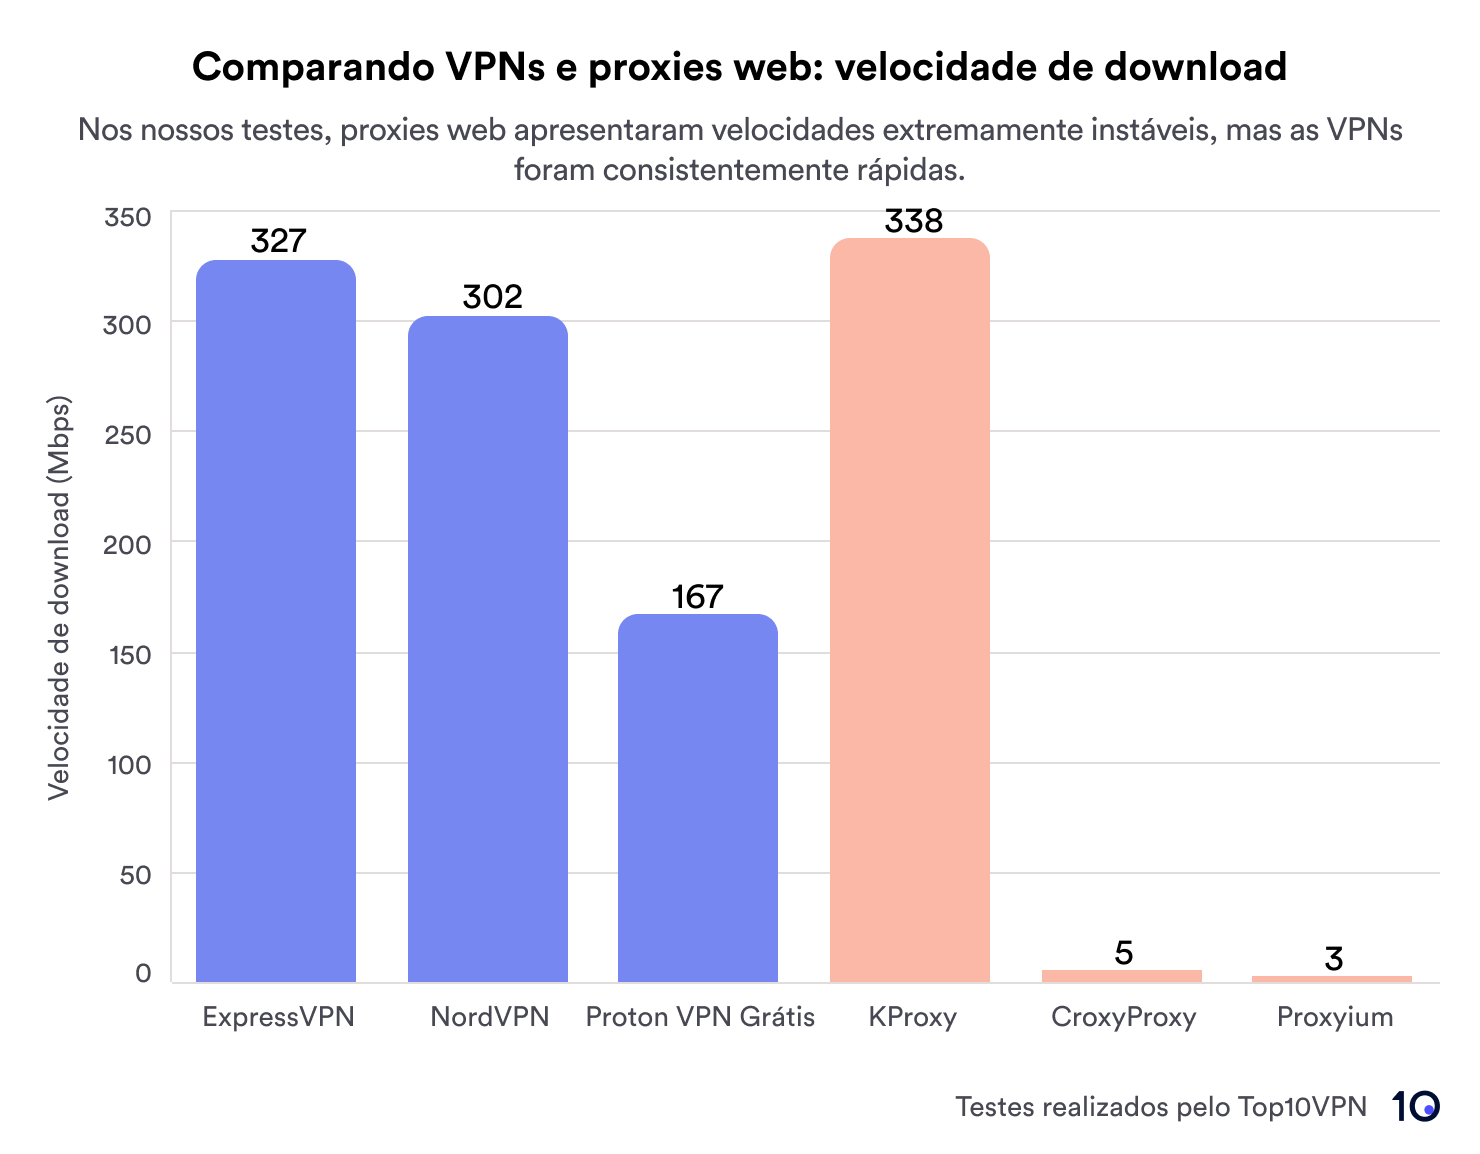 Gráfico de barras mostrando que VPNs consistentemente oferecem velocidades altas de download, enquanto proxies oferecem velocidades mais lentas.